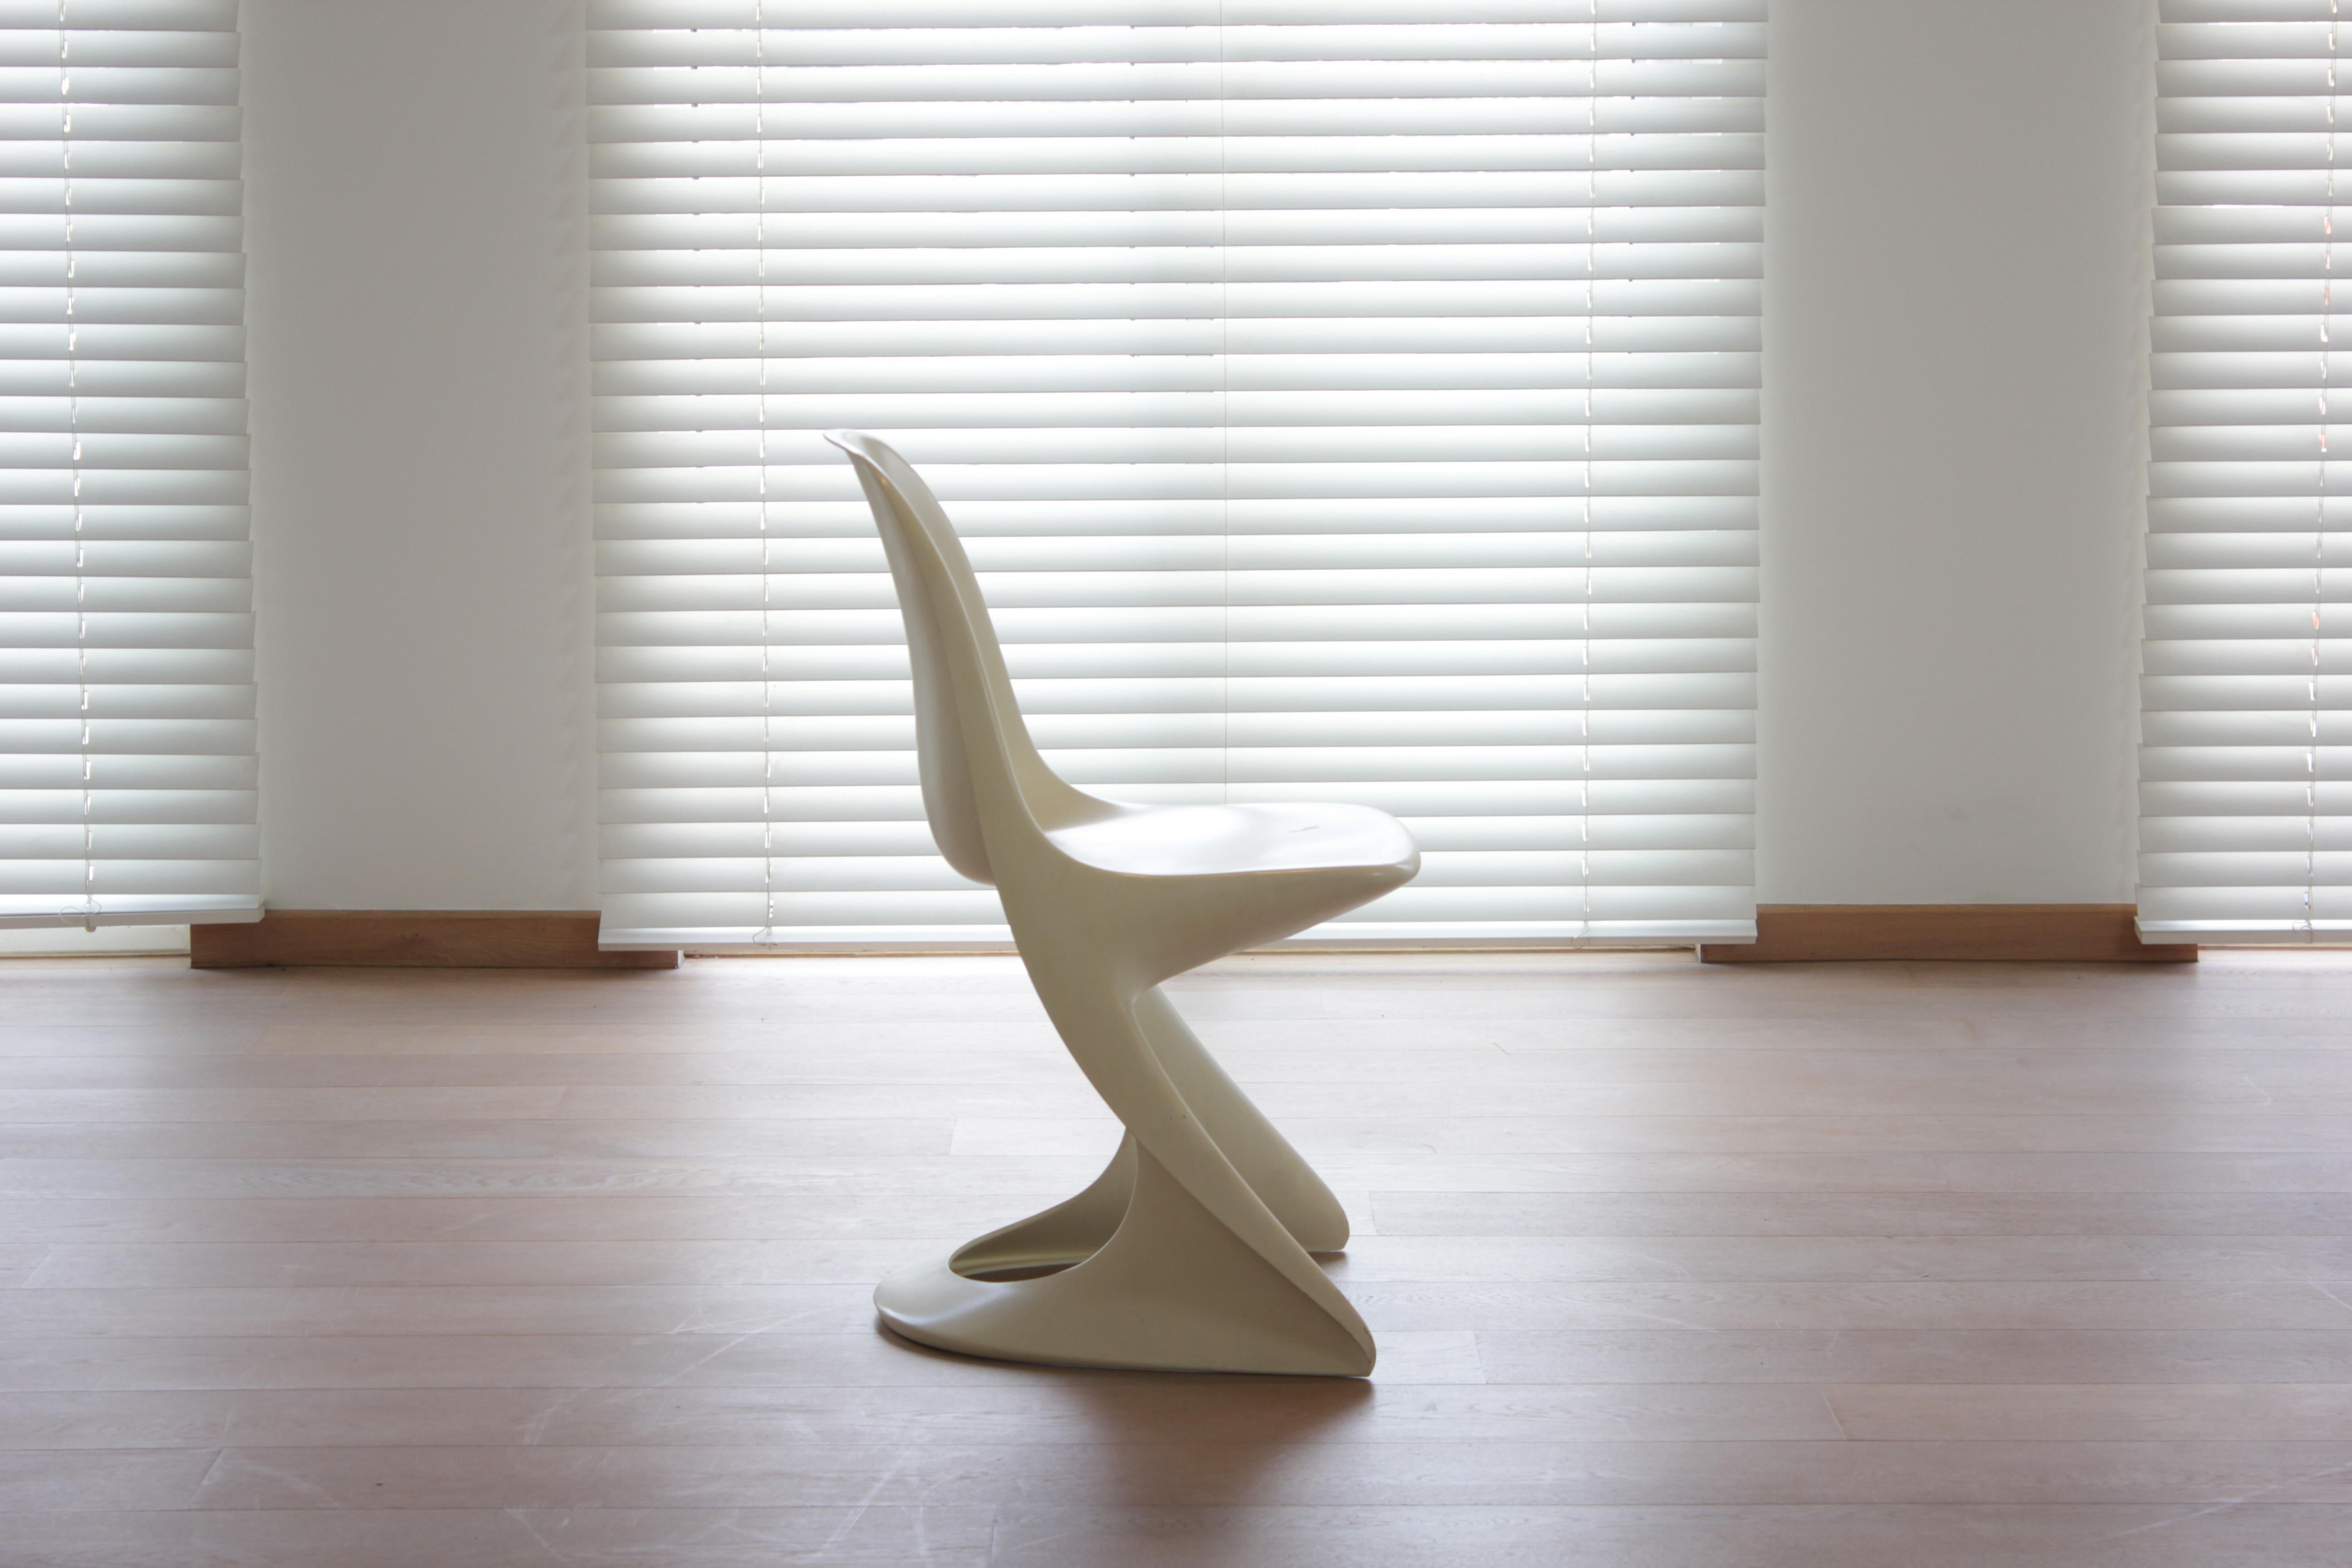 Modell 2004/2005 Casalino-Stuhl von Alexander Begge für Casala, 1970er Jahre (Moderne der Mitte des Jahrhunderts)